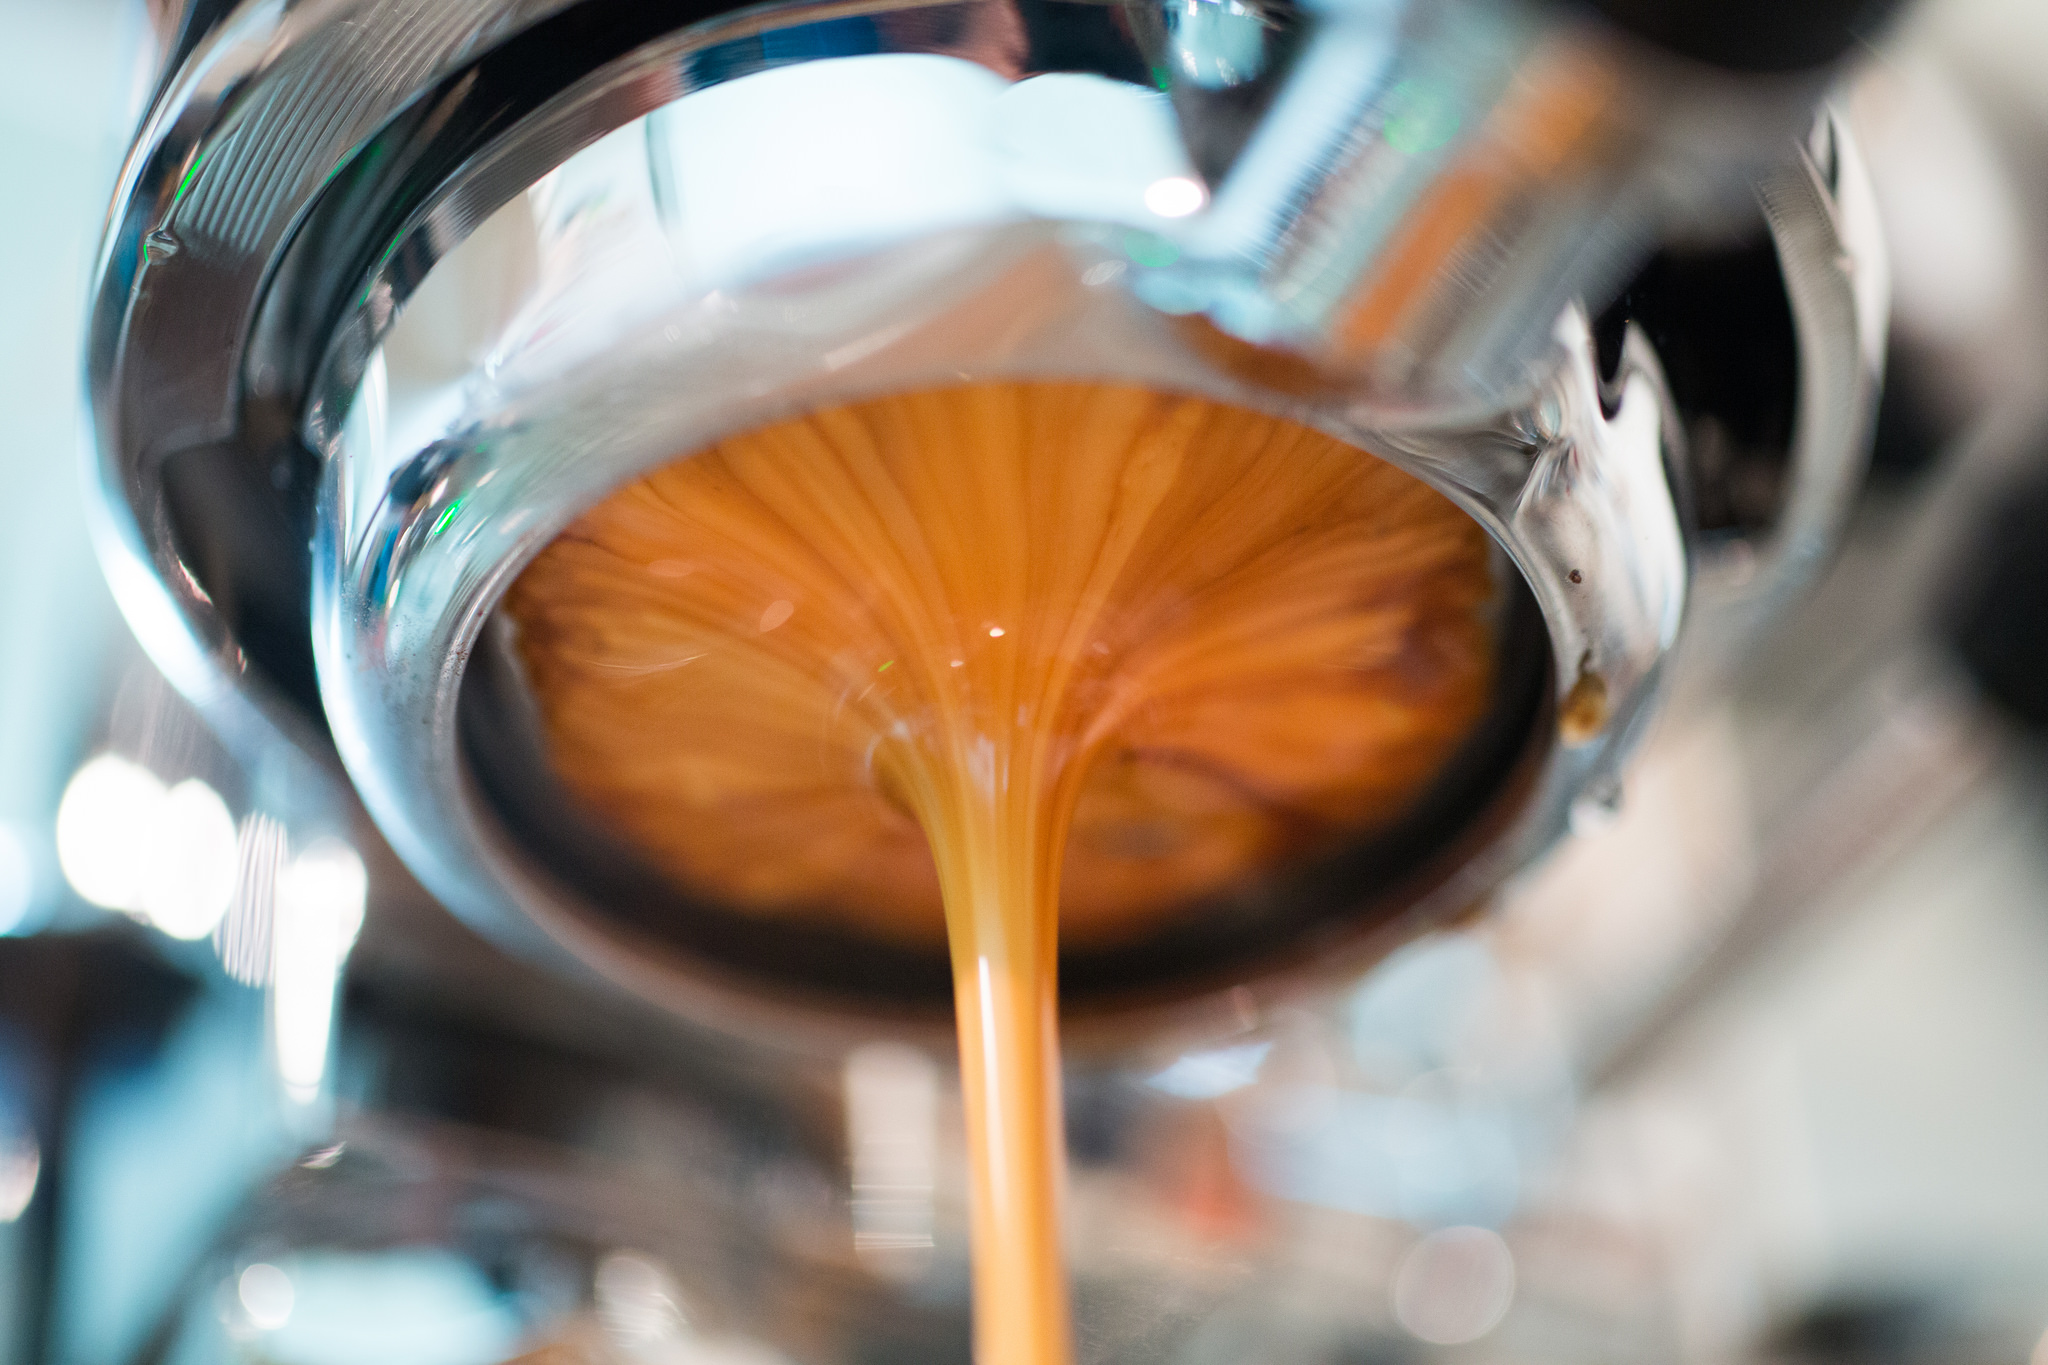 Espresso extraction